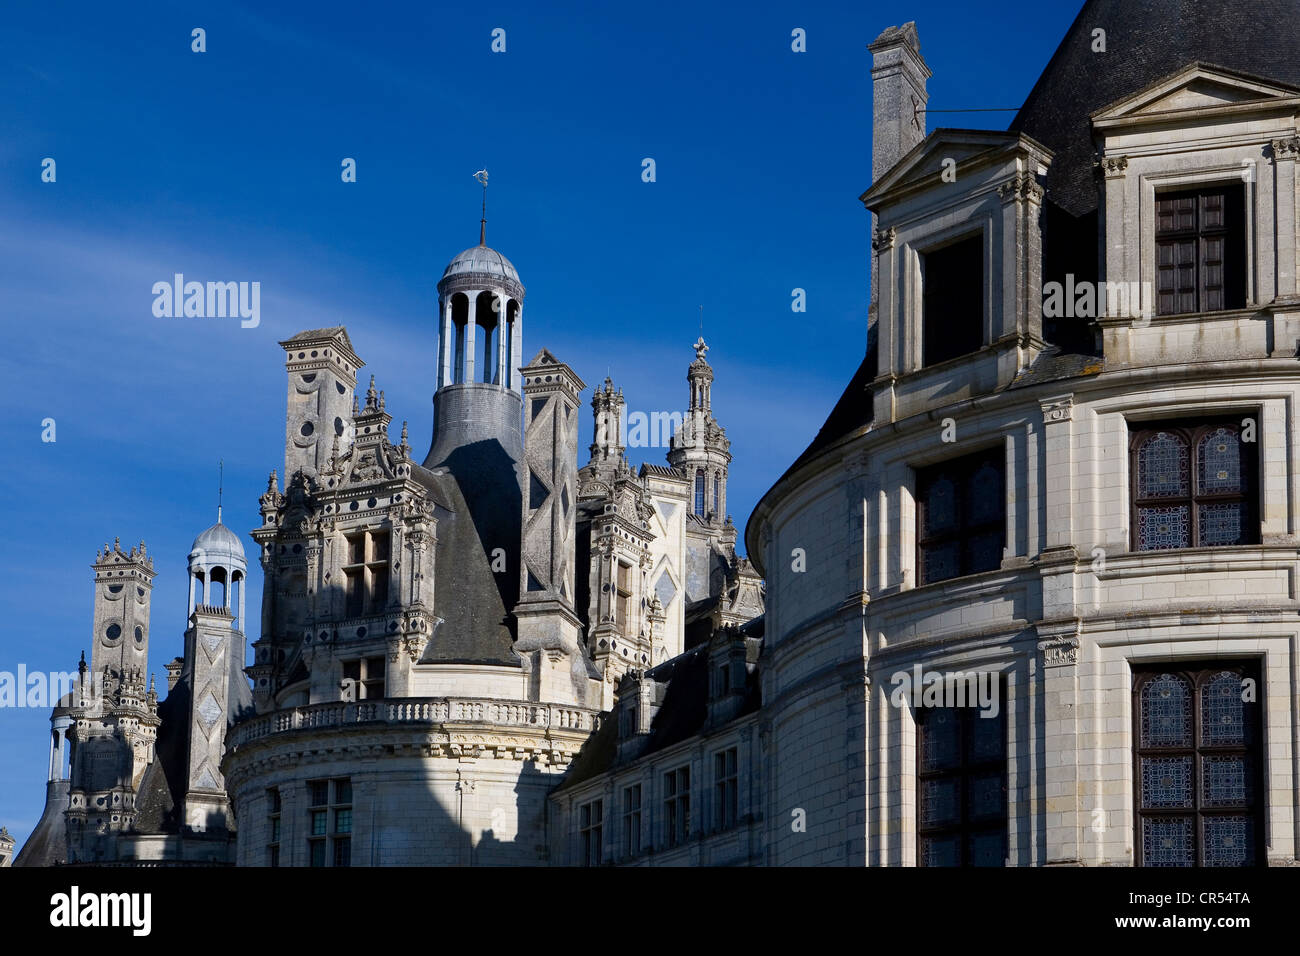 France, Loir et Cher, Loire Valley, UNESCO World Heritage, Chambord, chateau de Chambord, the royal castle Stock Photo